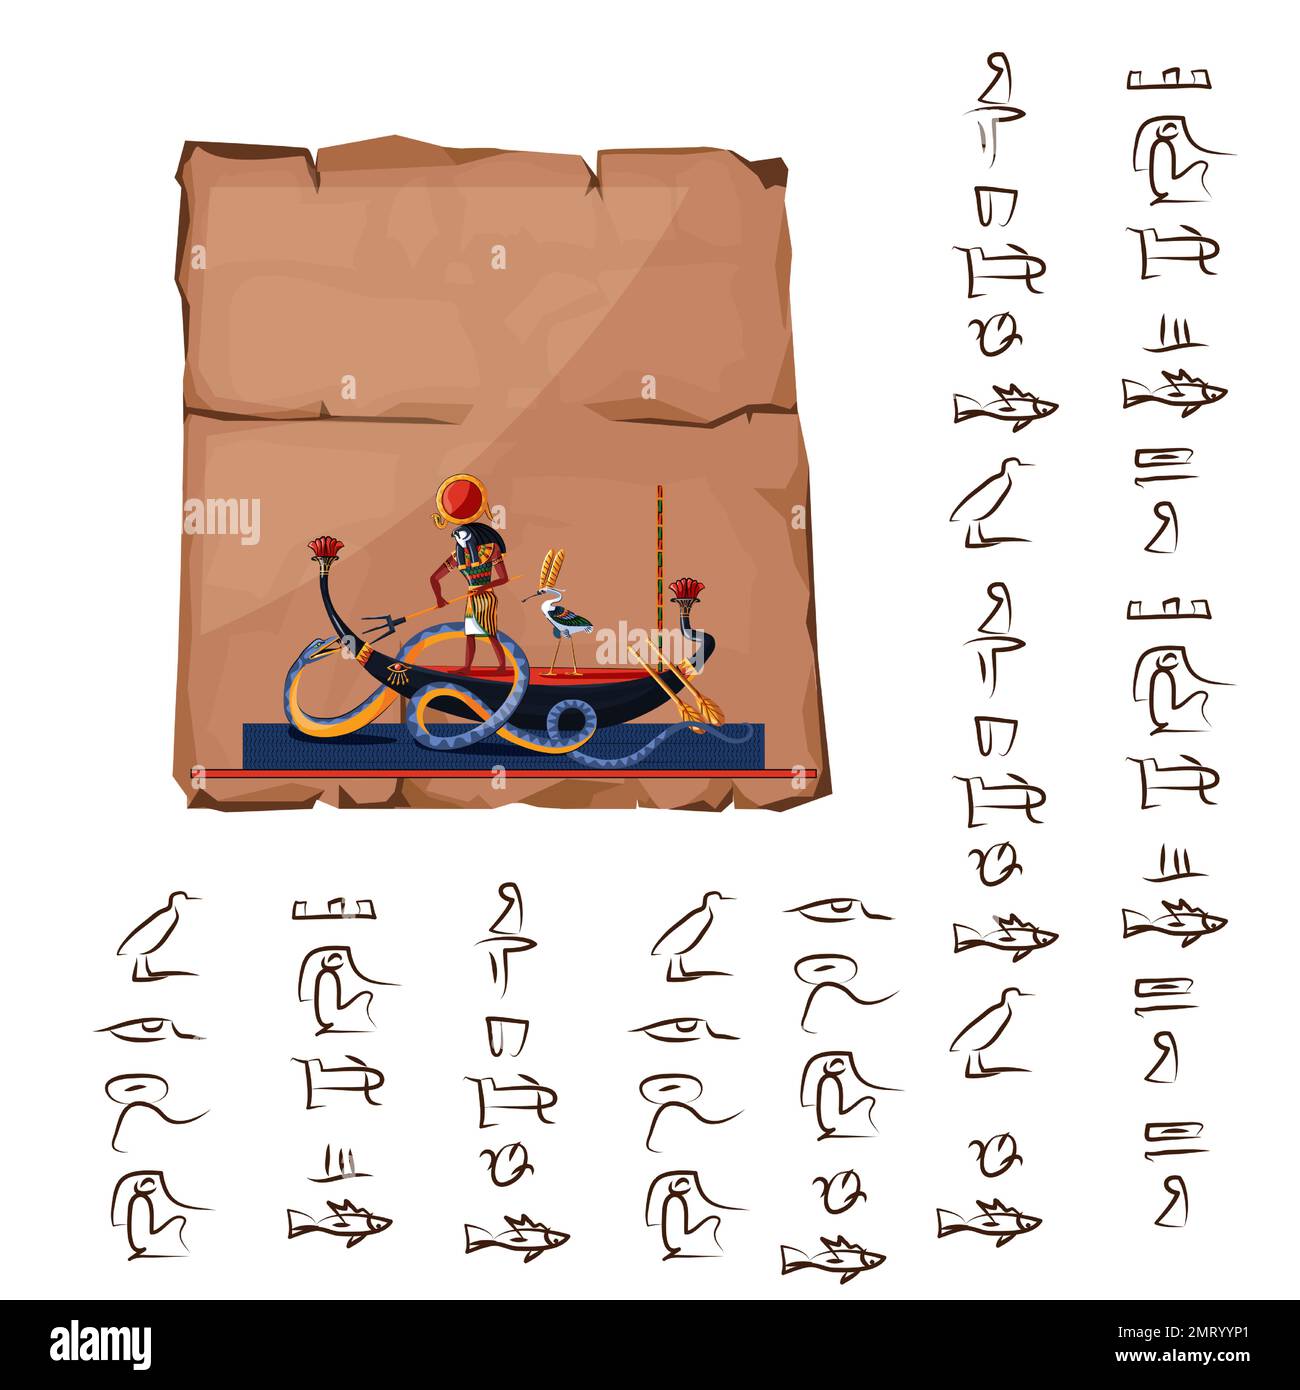 L'Égypte antique papyrus vecteur de dessin animé avec hiéroglyphes et symboles religieux de la culture égyptienne, Ra, Dieu du soleil de nuit navigue en bateau sur la rivière souterraine et combat avec le Dieu du chaos serpent Apophis Illustration de Vecteur